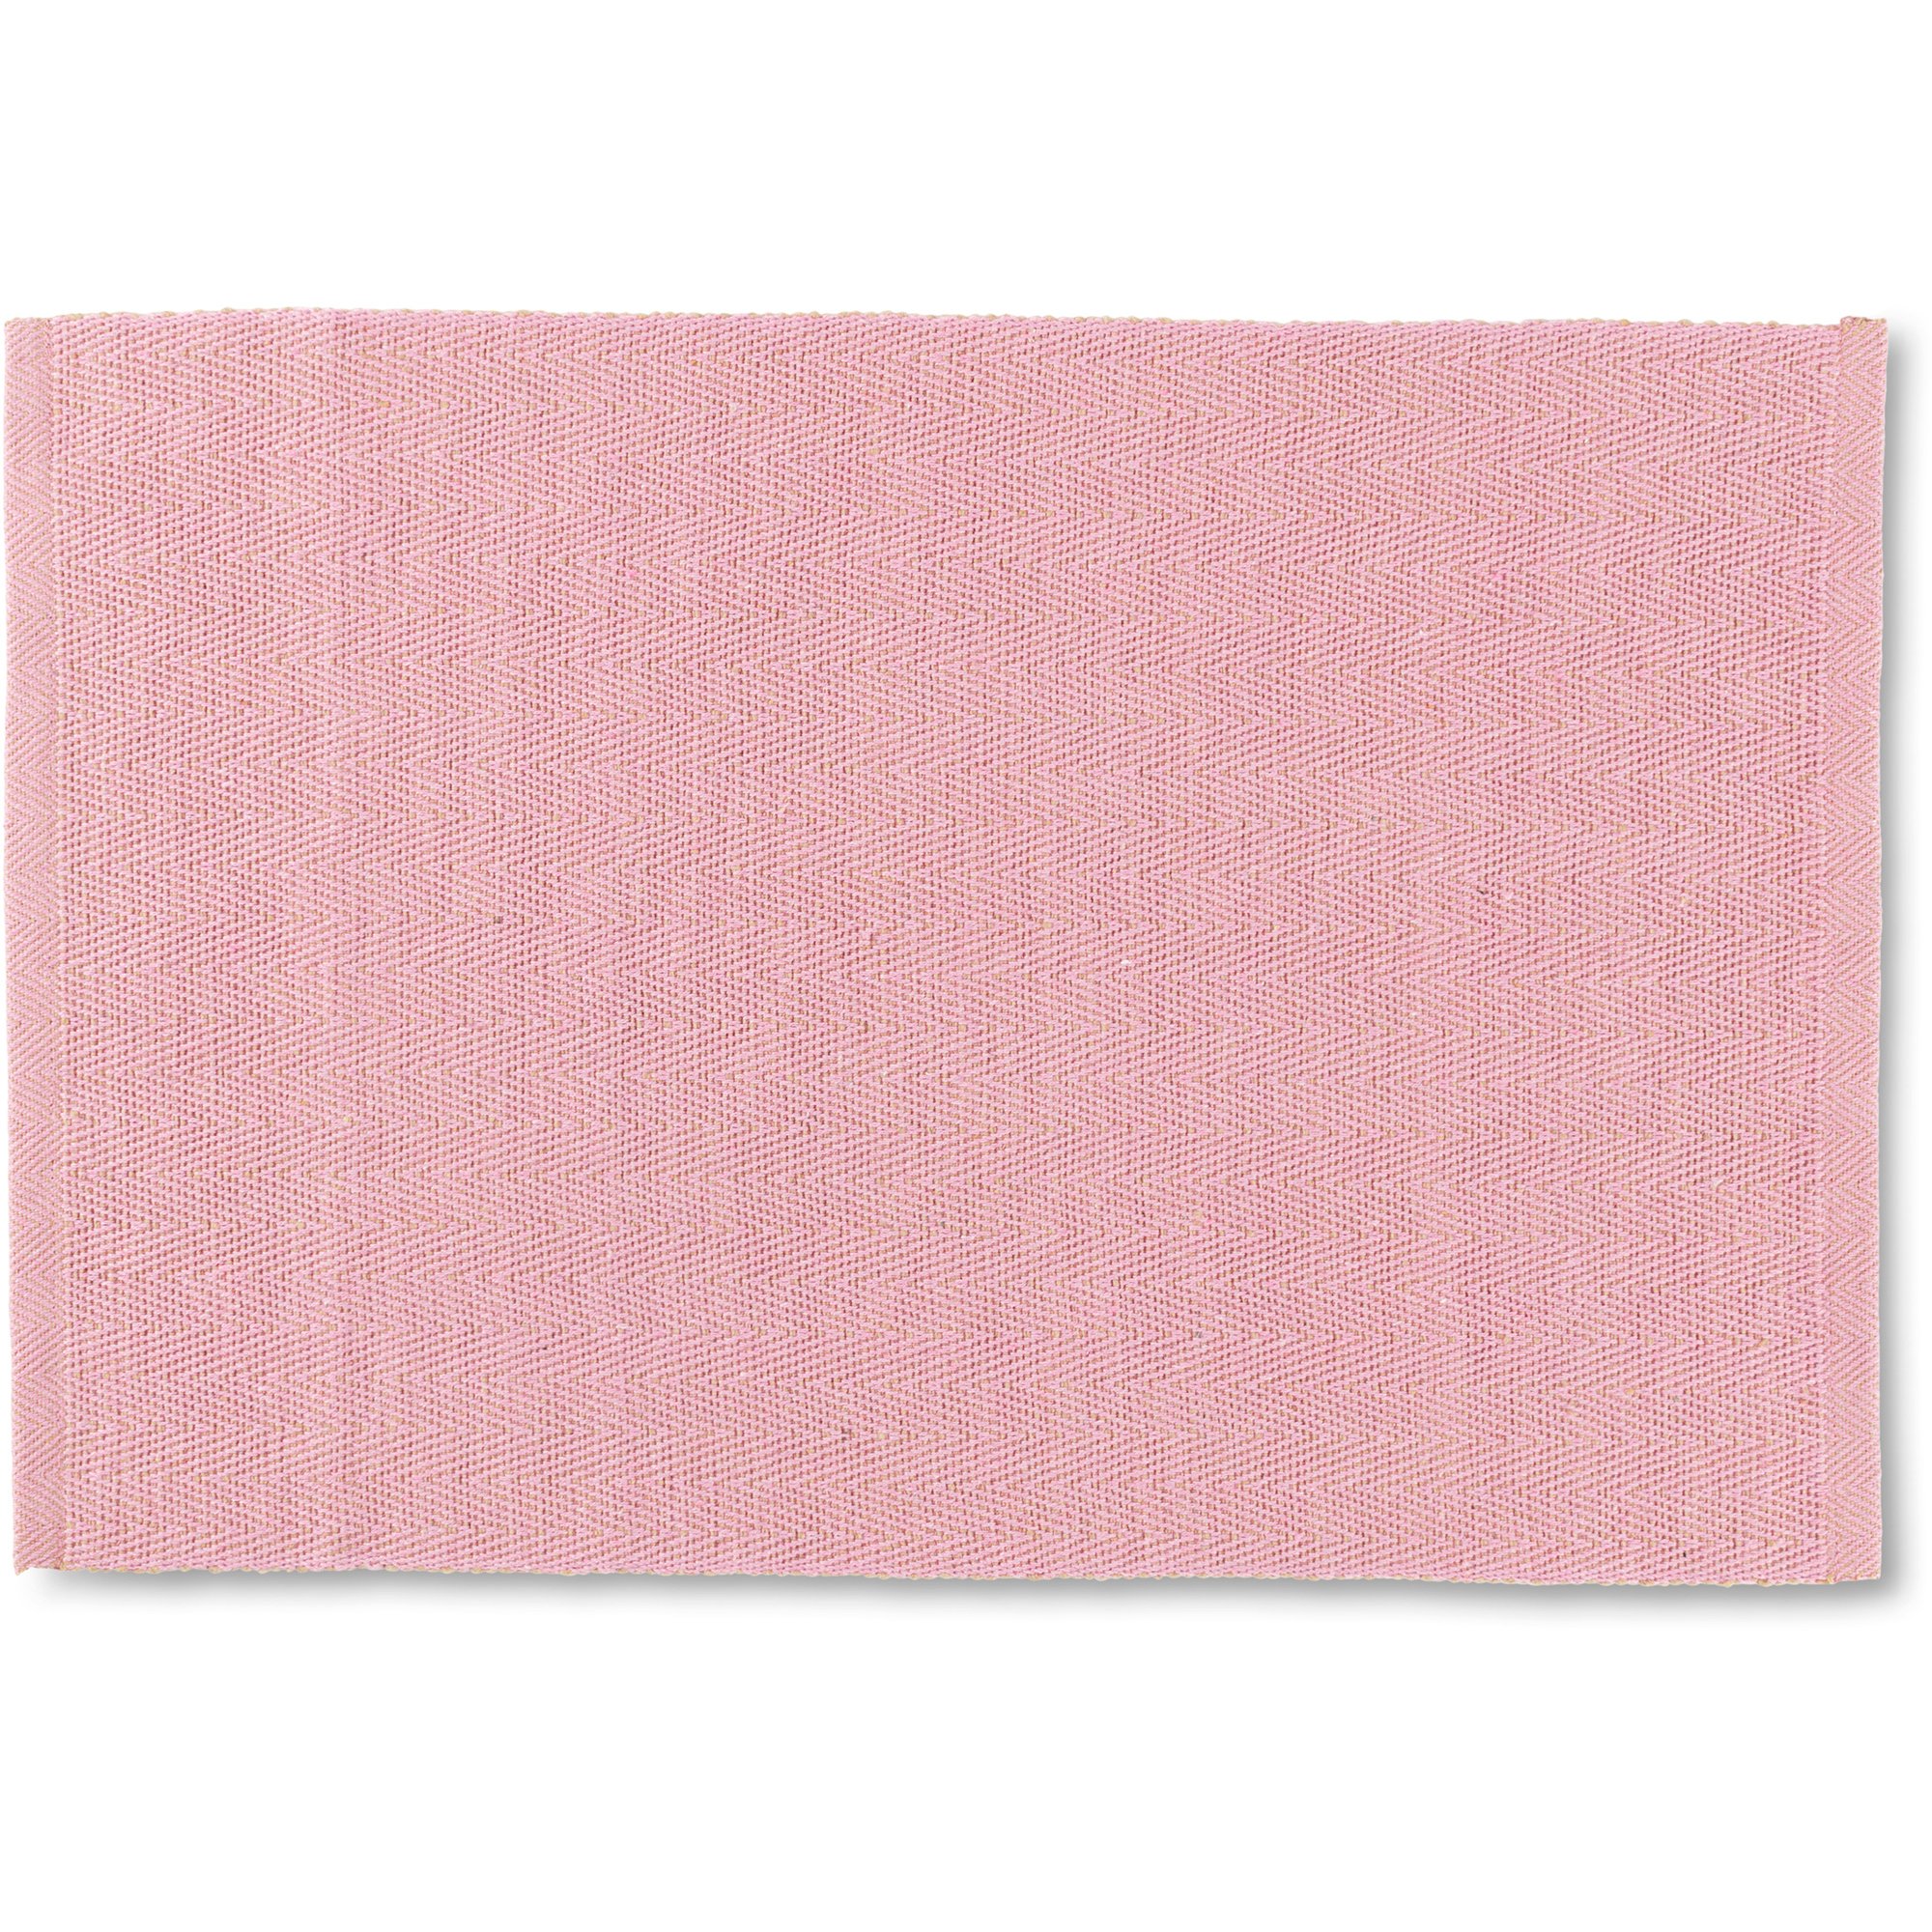 Produktfoto för Lyngby Porcelæn Herringbone bordstablett, rosa